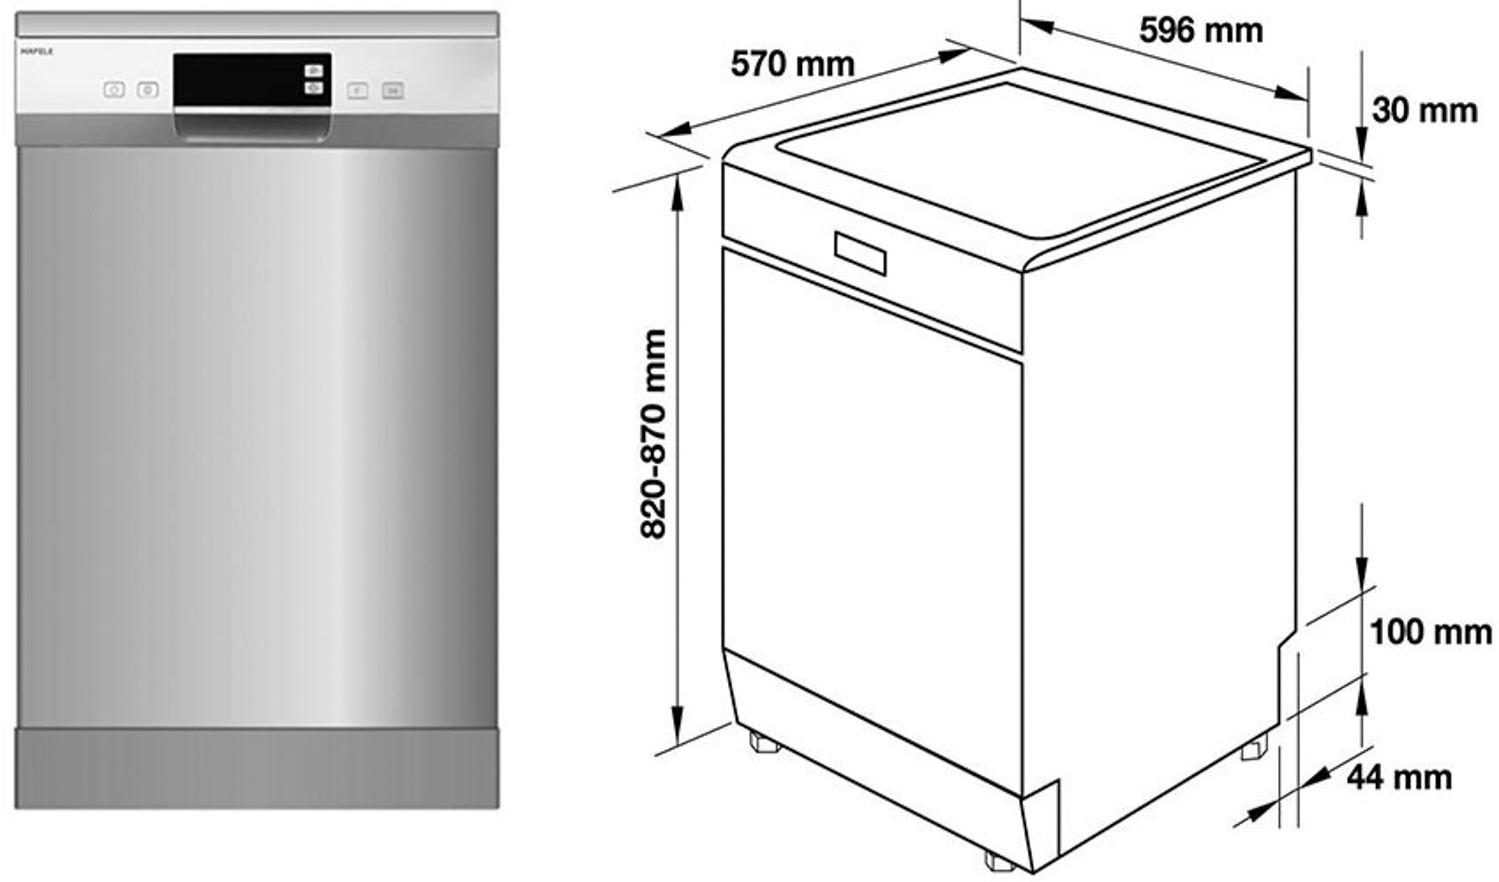 Các thông số kỹ thuật của máy rửa chén độc lập Hafele HDW-F60E 538.21.200